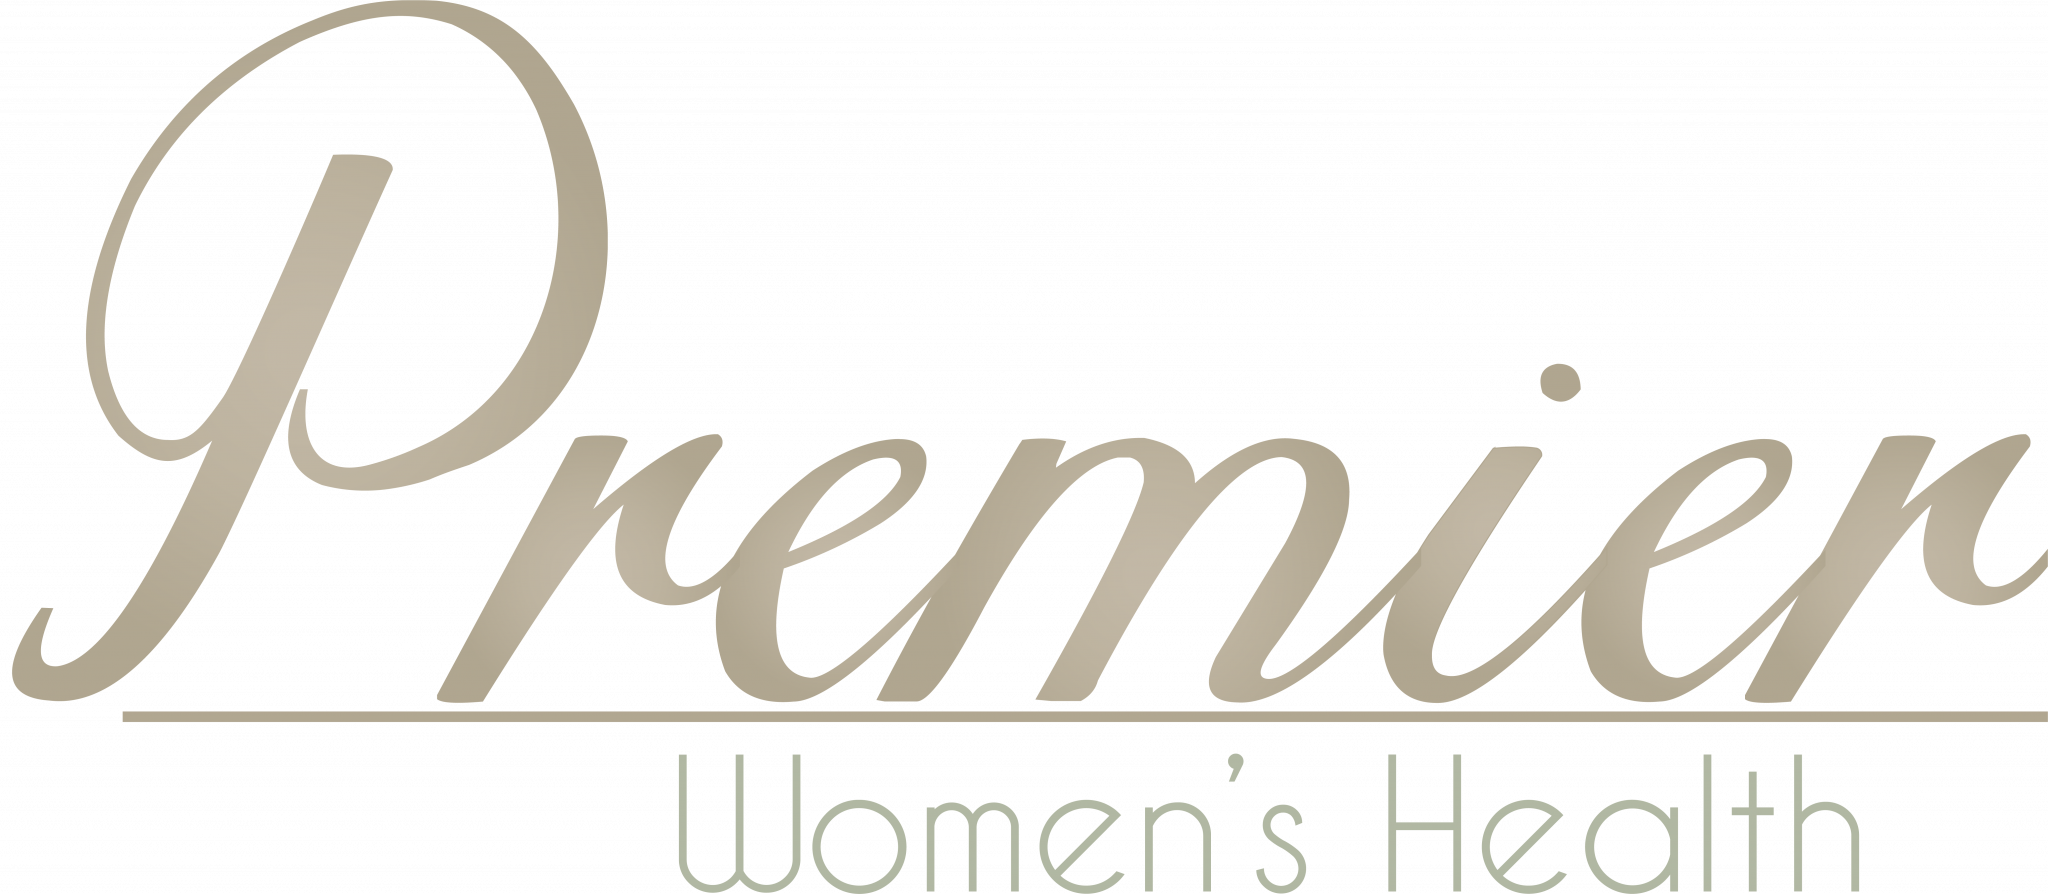 Premier Women's Health Logo Transparent Large